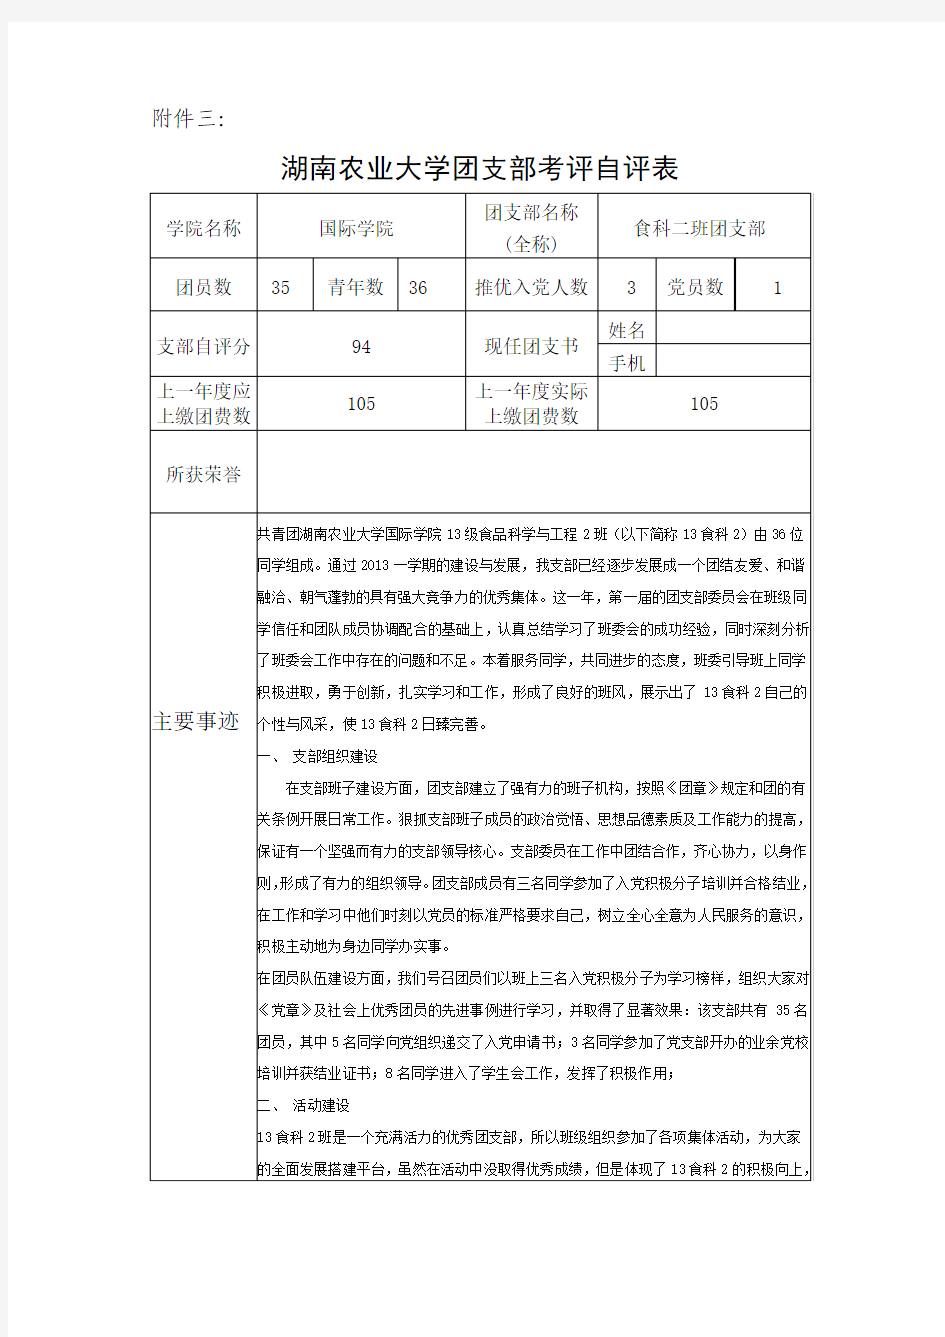 《湖南农业大学团支部考评自评表》